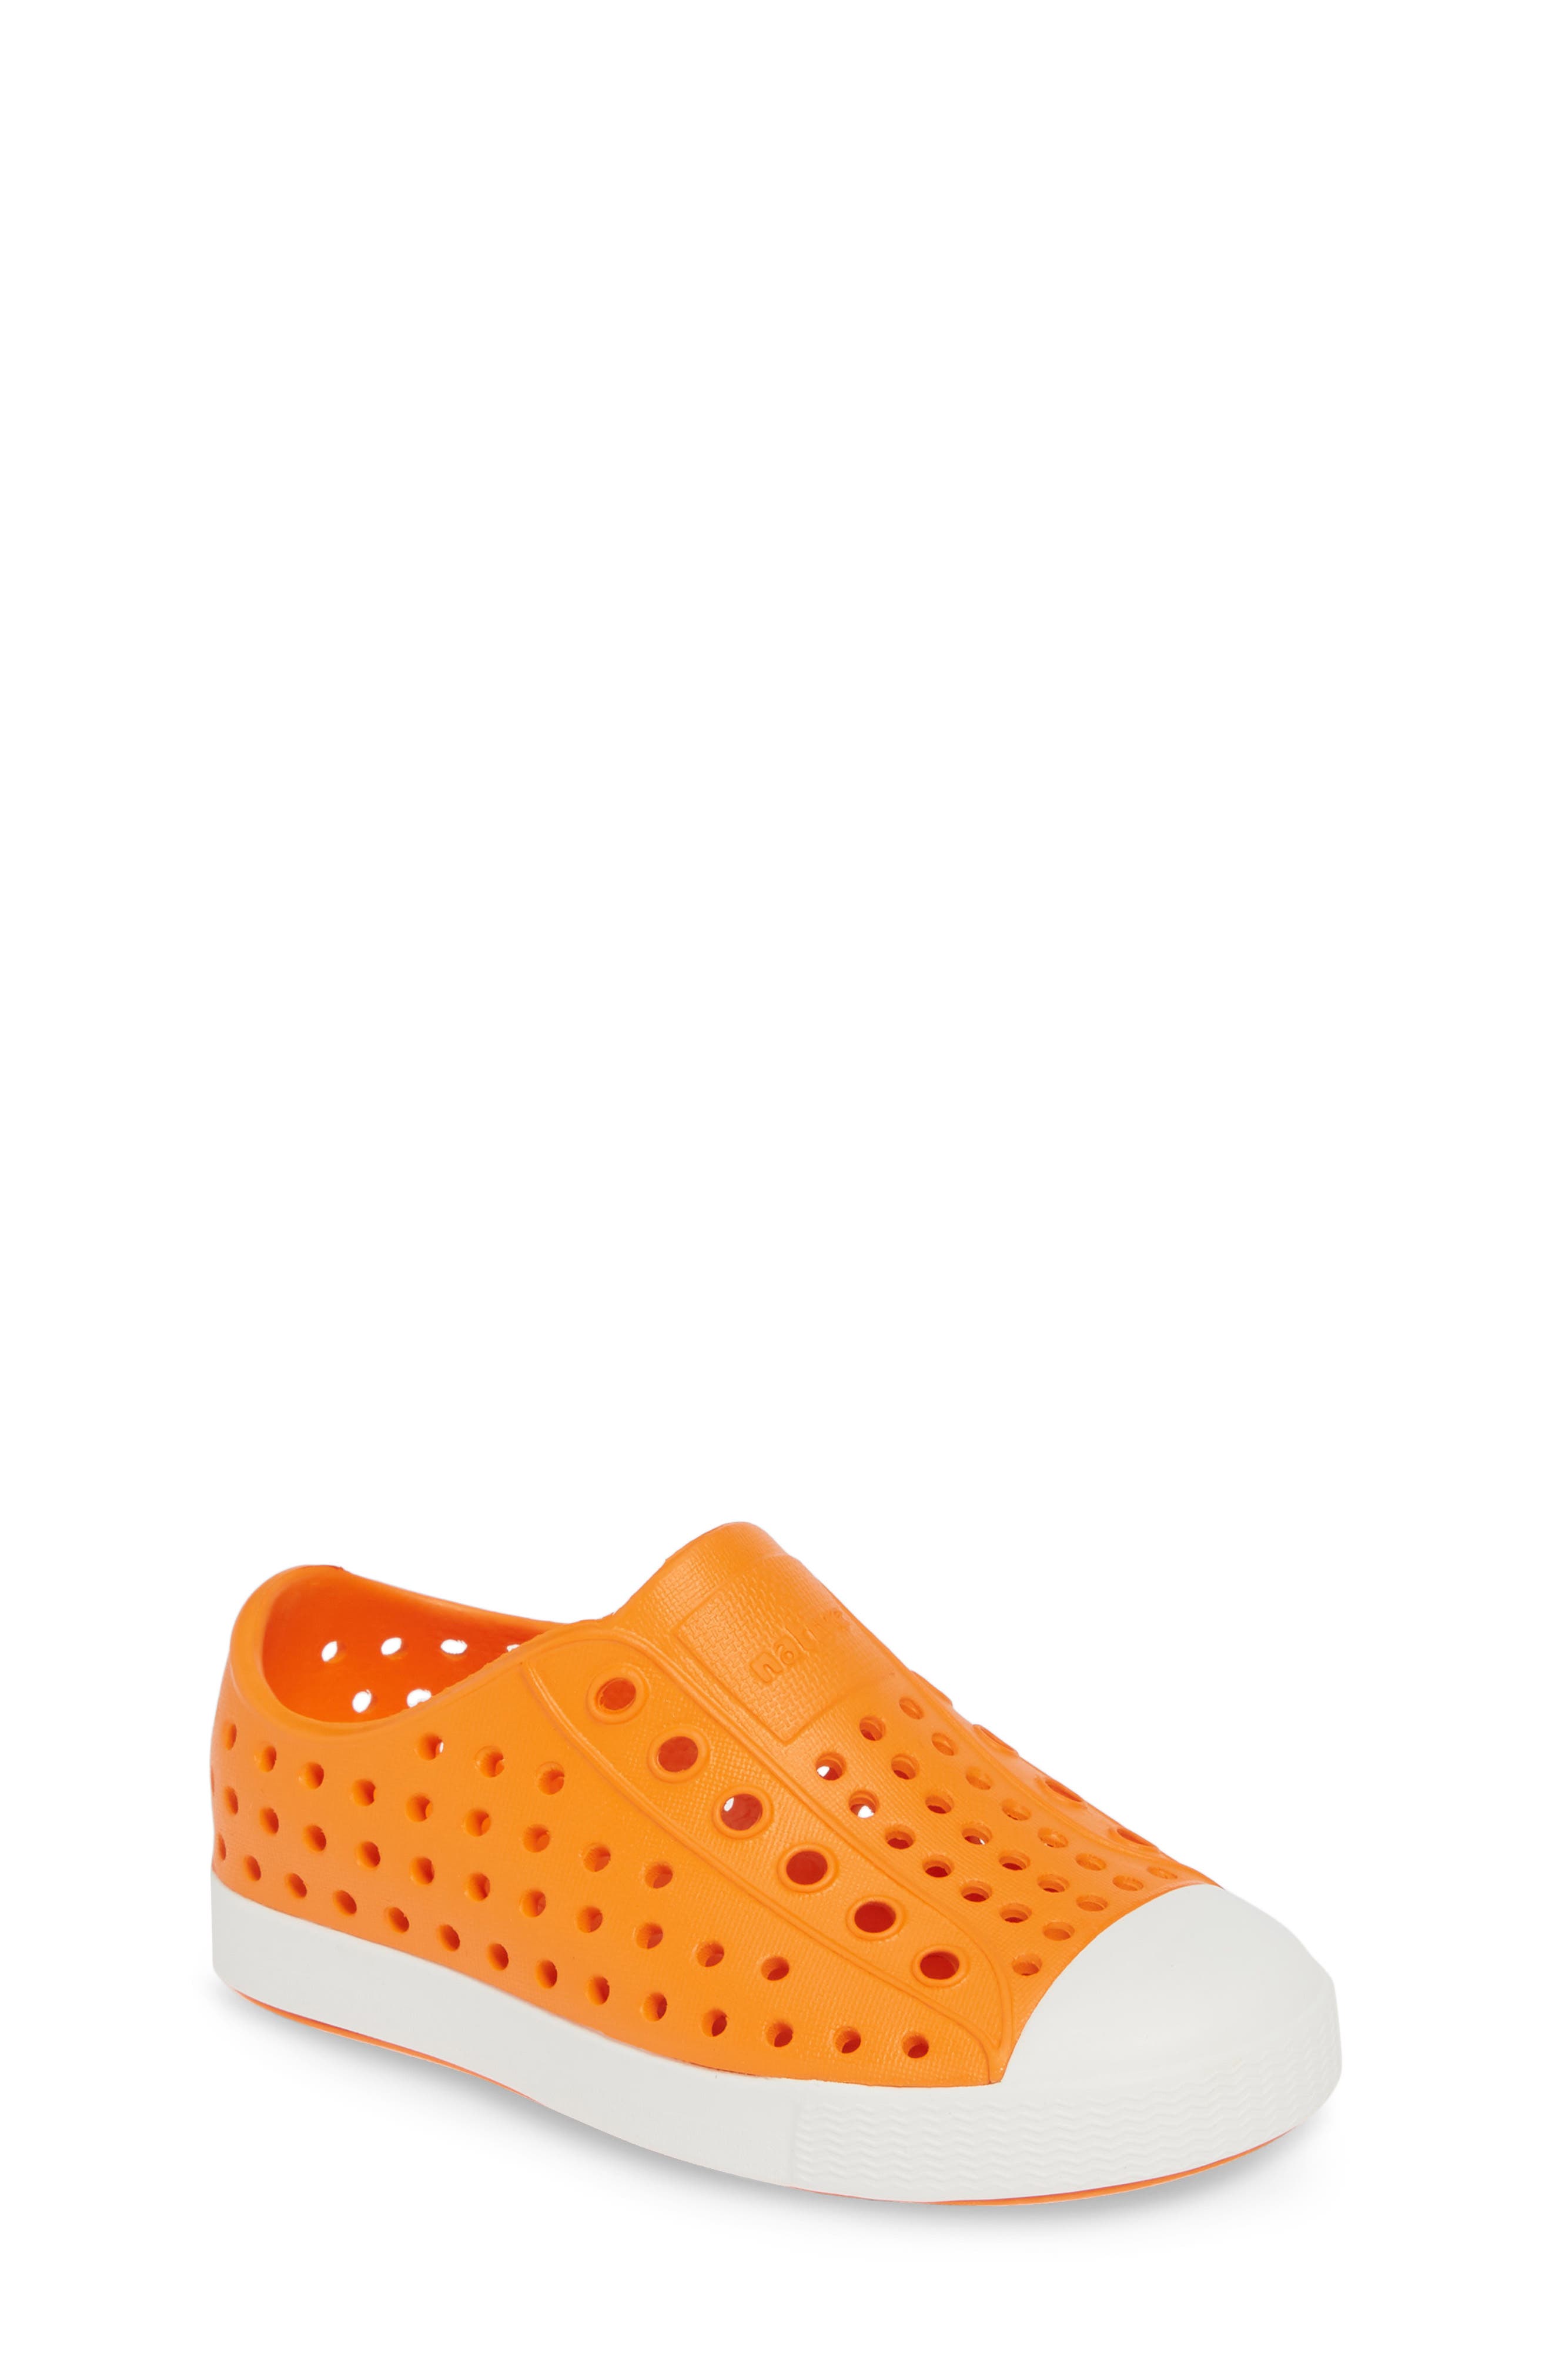 boys orange shoes